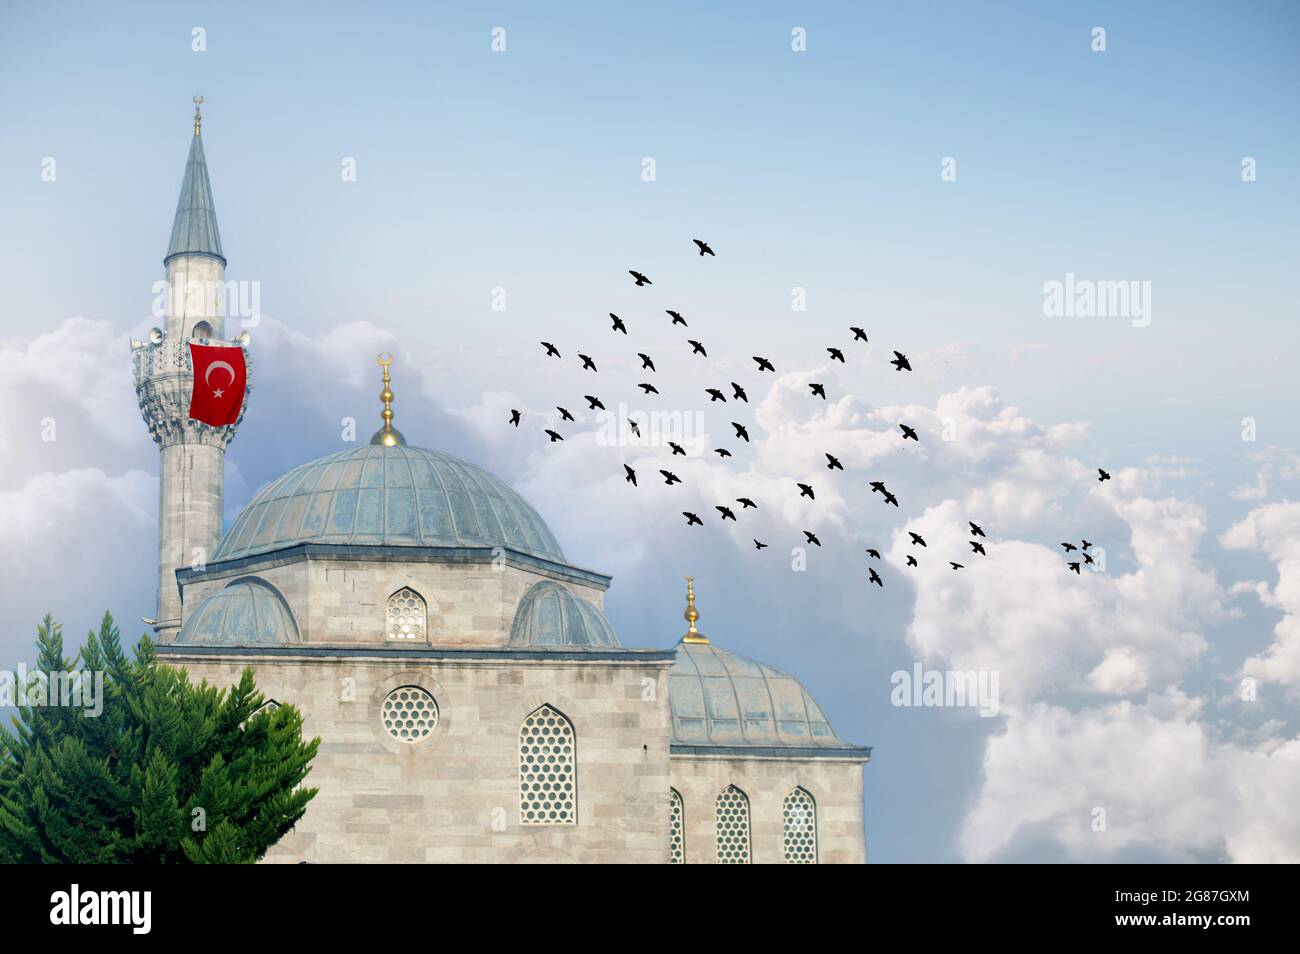 Moschea Shemsipasha di Istanbul (in turco: Şemsipaşa Kuşkonmaz camii) su nuvole bianche. Uccelli che volano intorno alla moschea. Casa islamica di culto per i musulmani. Foto Stock